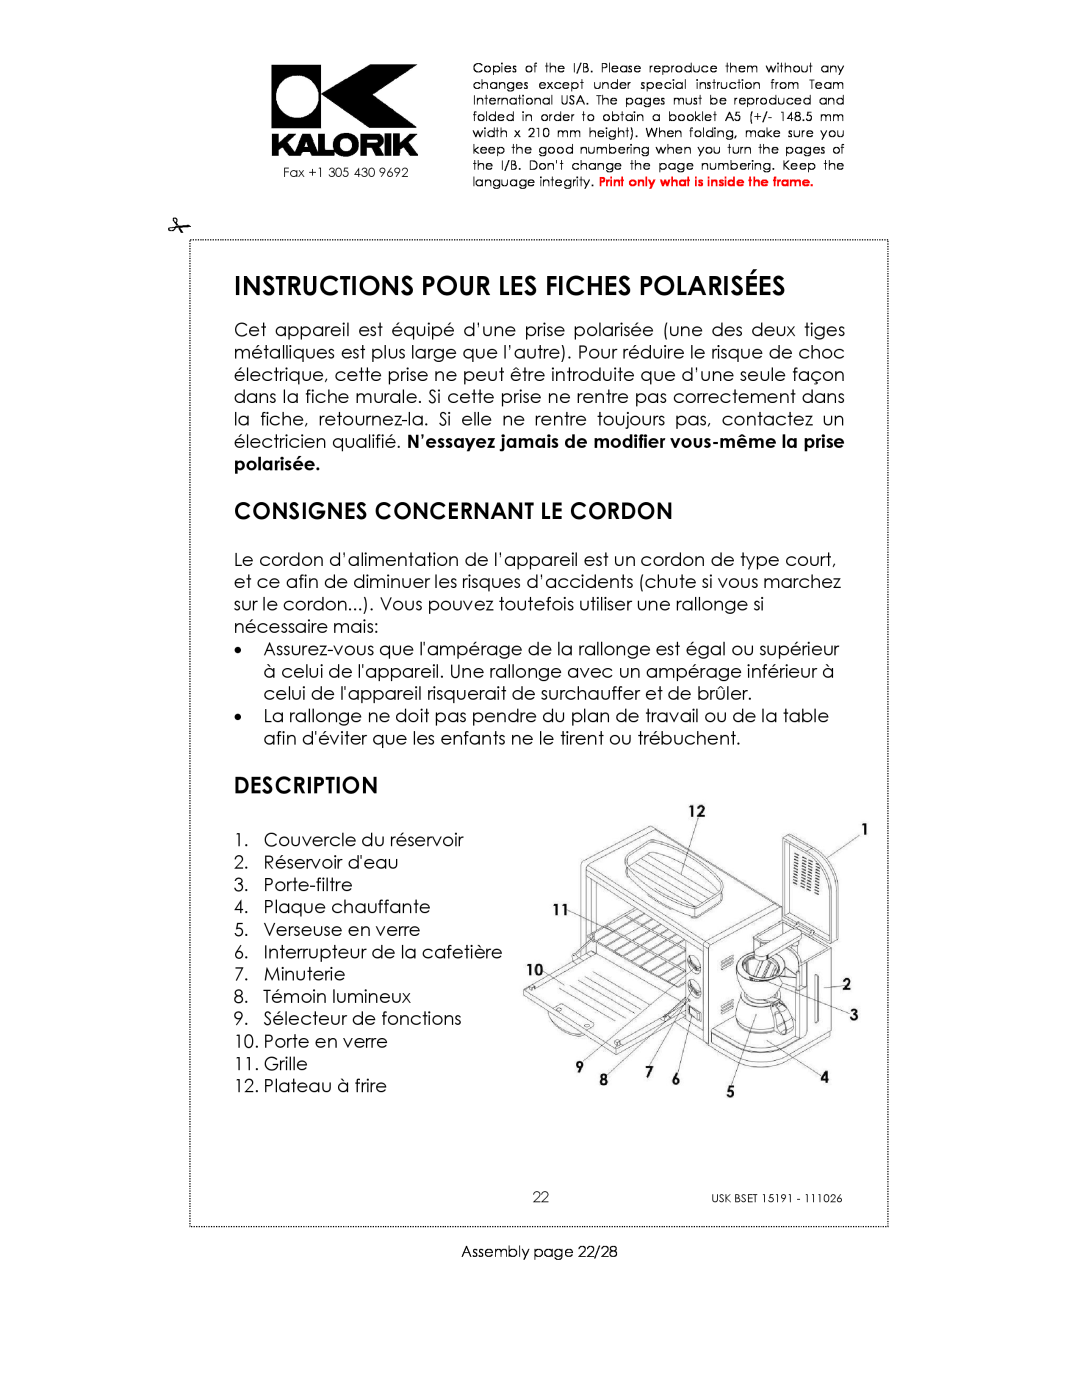 Kalorik USK BSET 15191 manual Instructions Pour Les Fiches Polarisées, Consignes Concernant Le Cordon, Description 